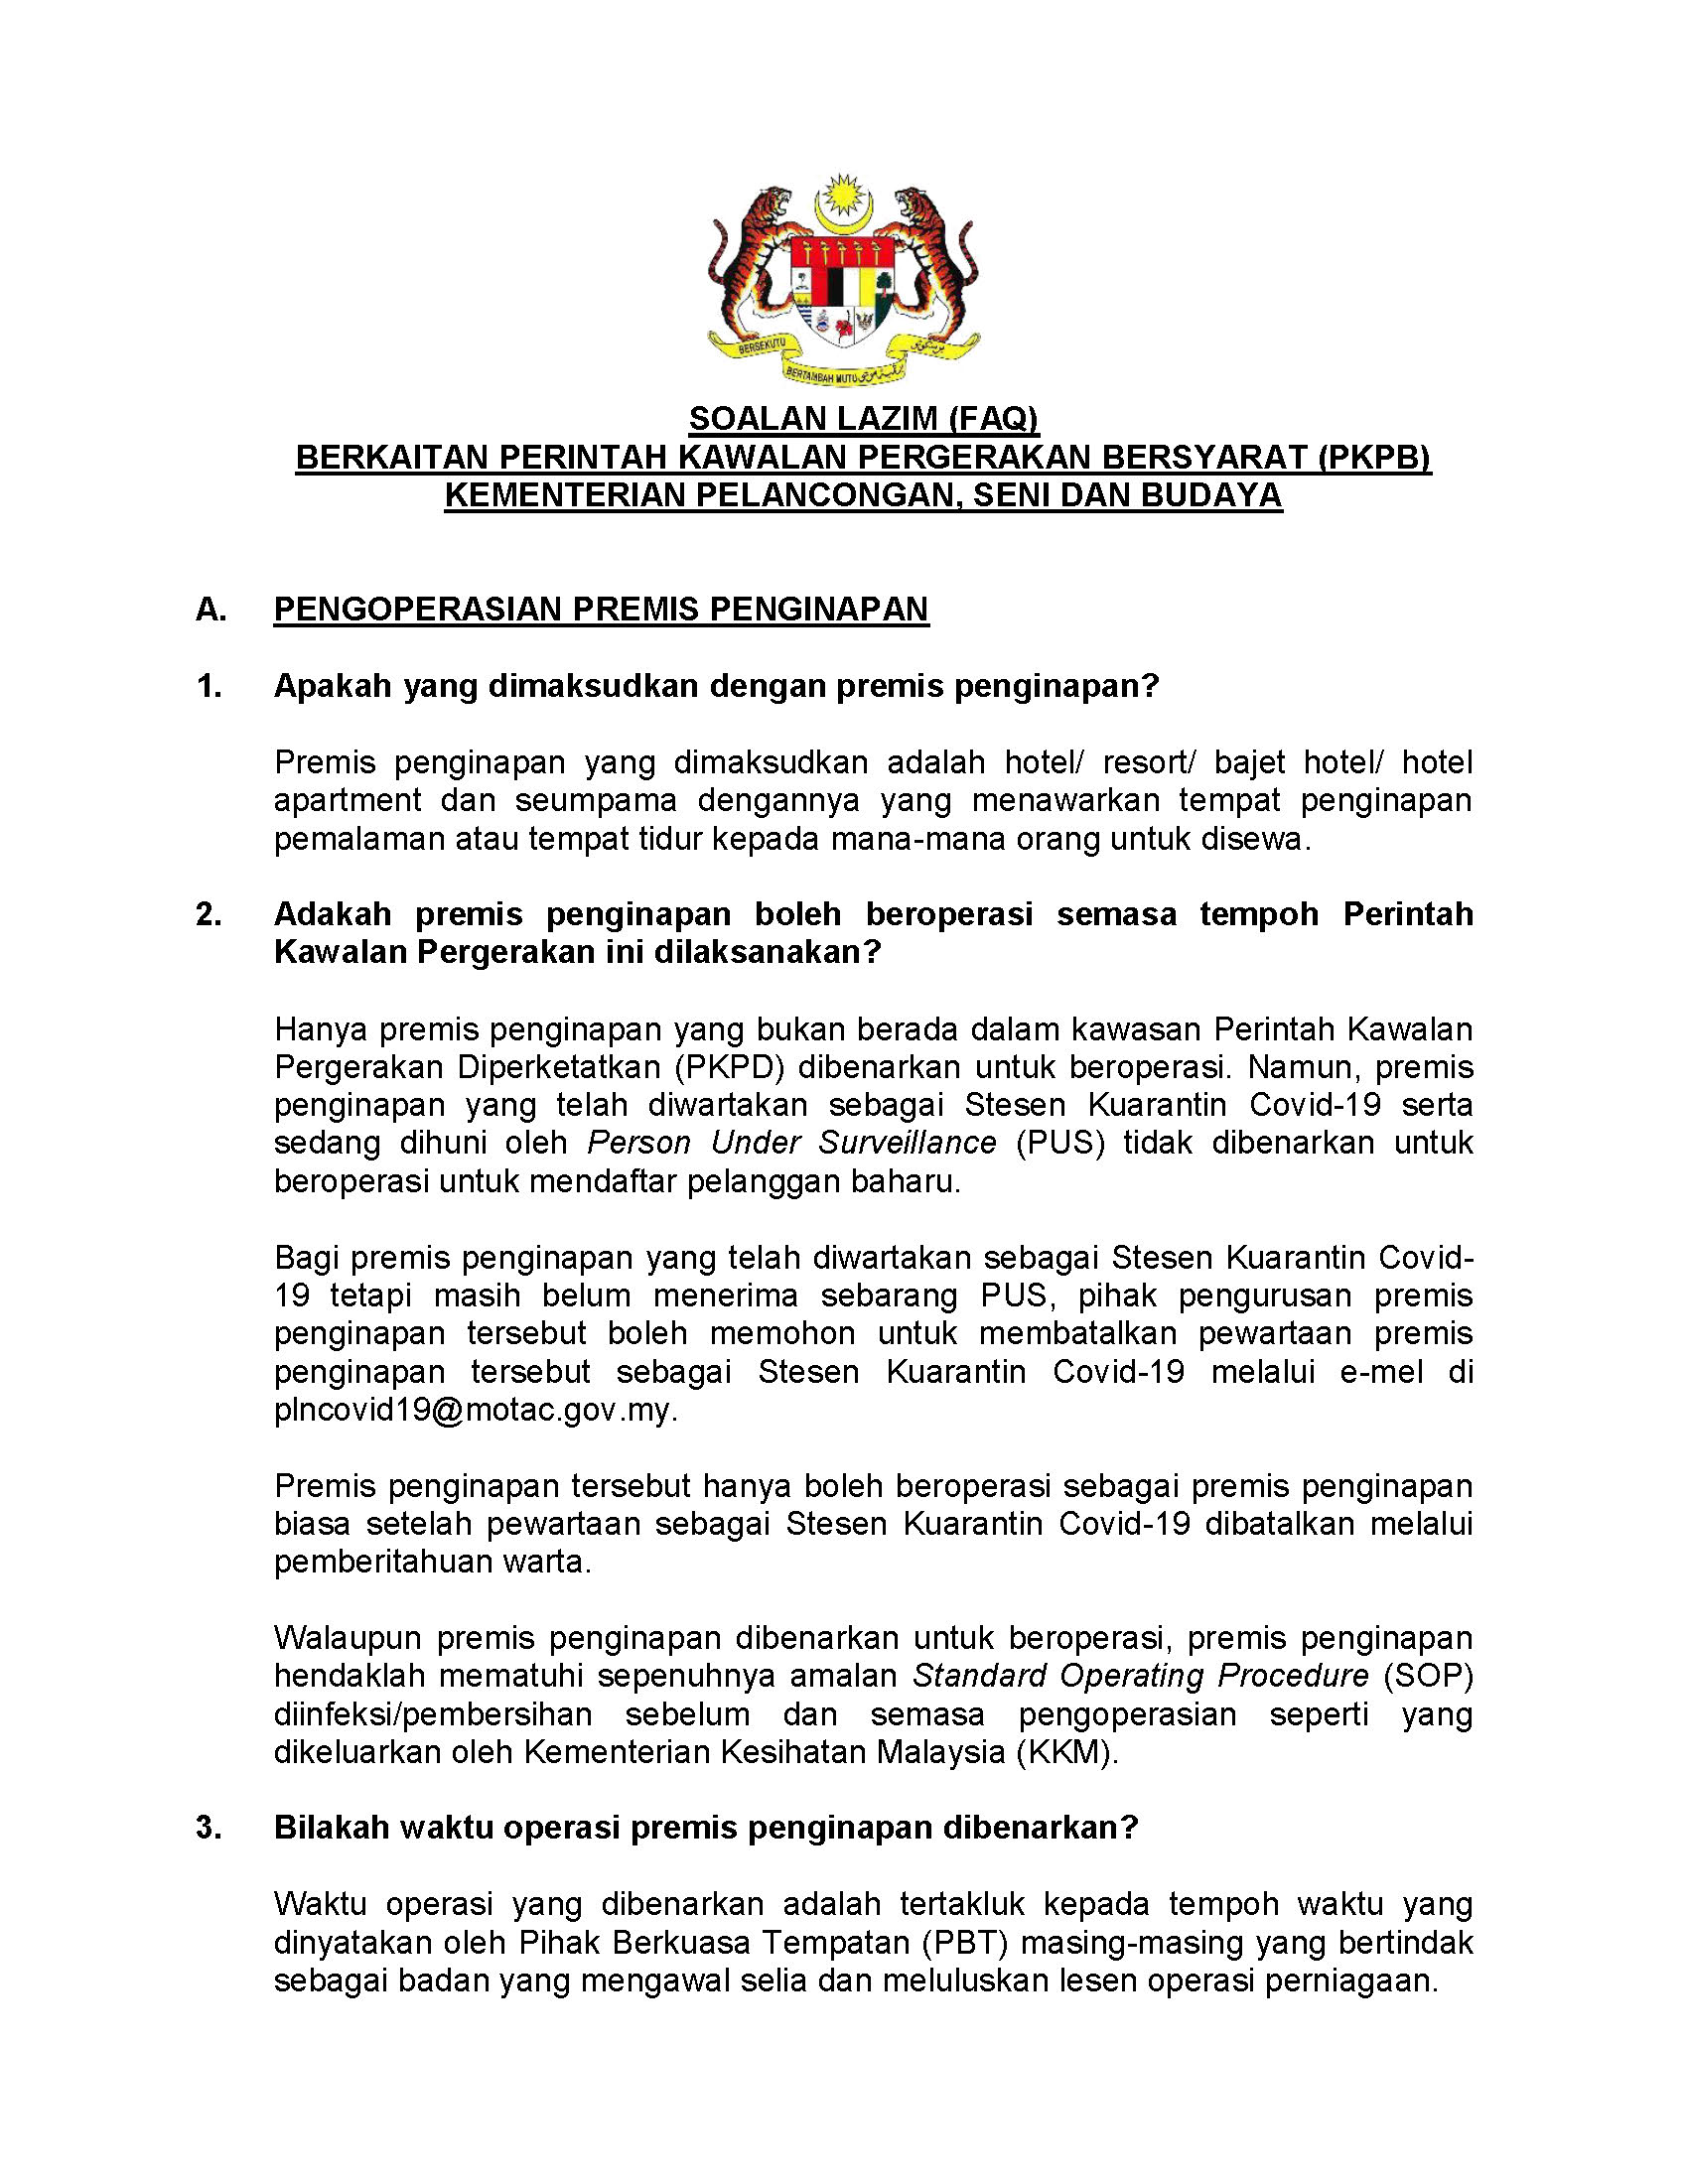 Soalan Lazim Faq Berkaitan Perintah Kawalan Pergerakan Bersyarat Pkpb Motac Ministry Of Tourism Arts And Culture Malaysia Official Portal